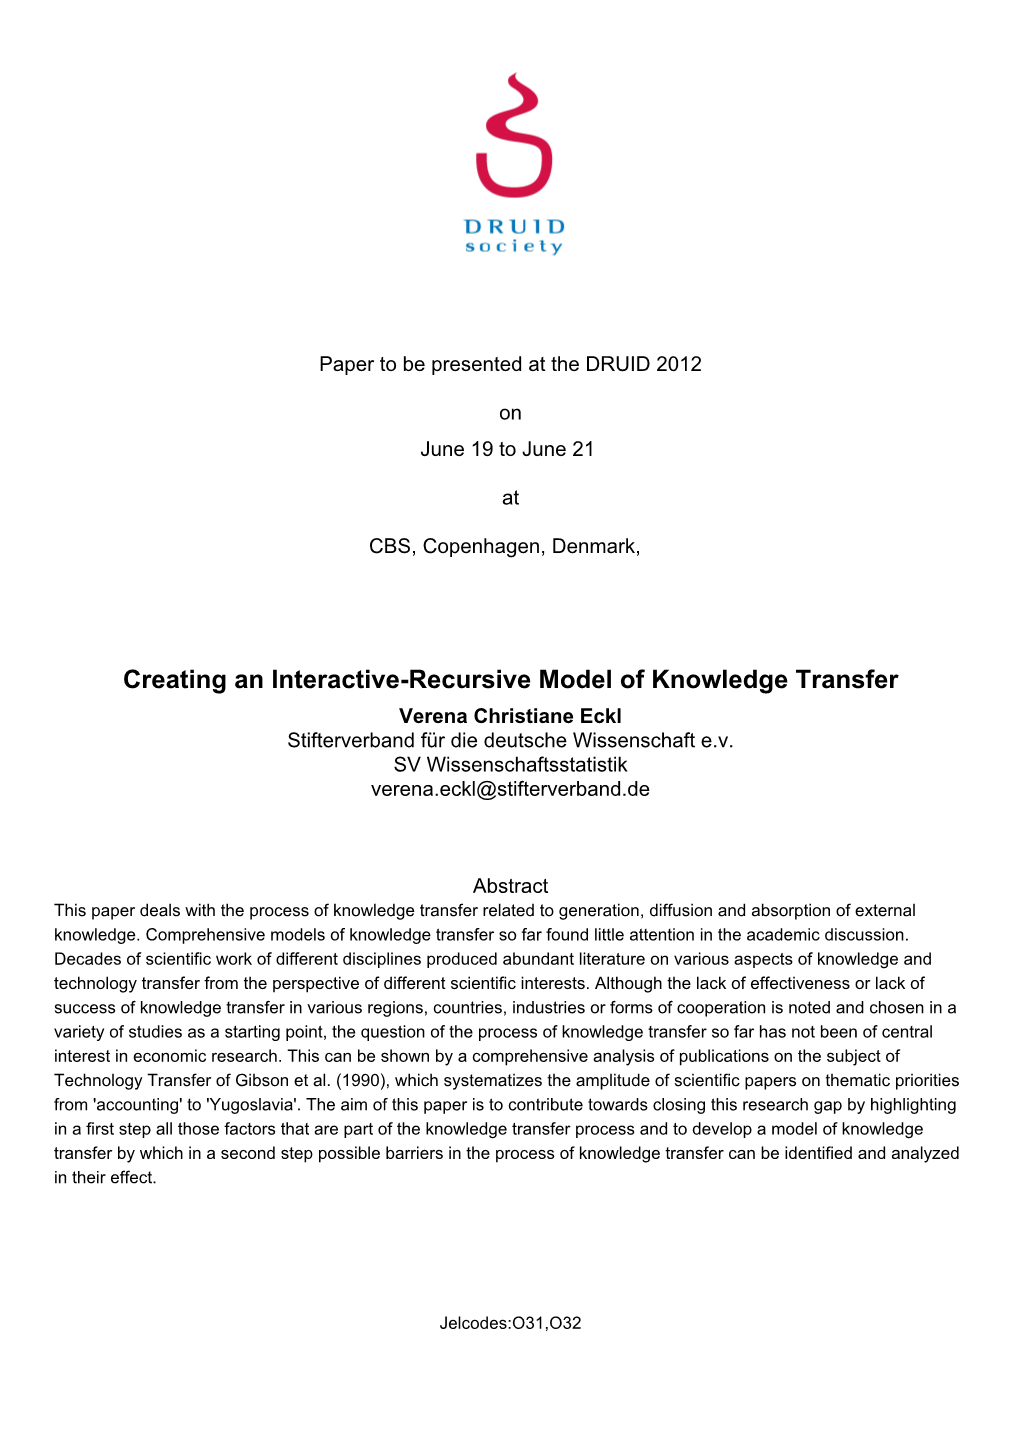 Creating an Interactive-Recursive Model of Knowledge Transfer Verena Christiane Eckl Stifterverband Für Die Deutsche Wissenschaft E.V